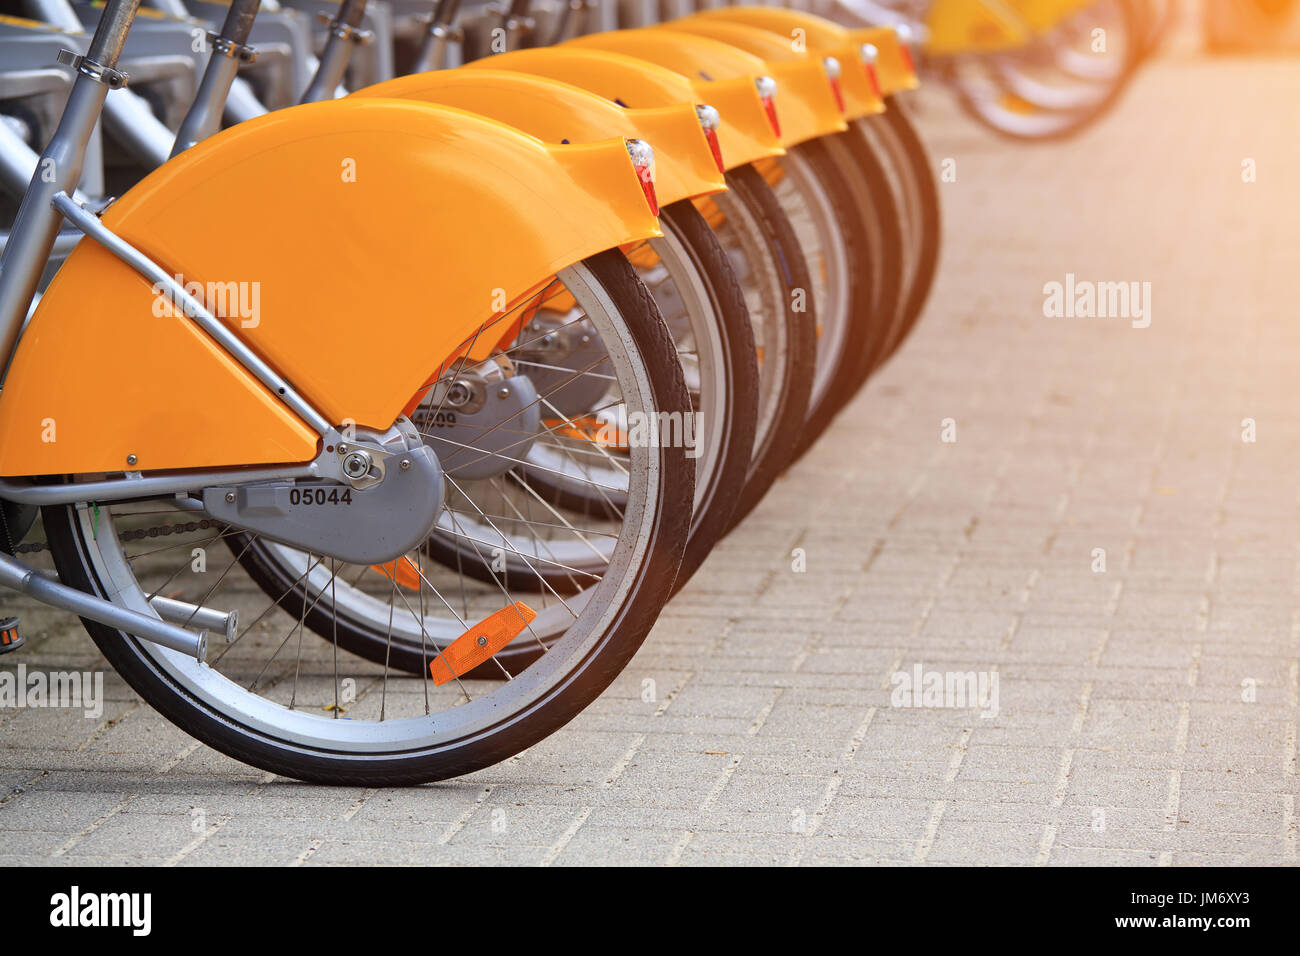 Noleggio biciclette close-up. Ruote posteriori di noleggio biciclette in piedi in fila. Noleggio biciclette in Amsterdam. Foto Stock